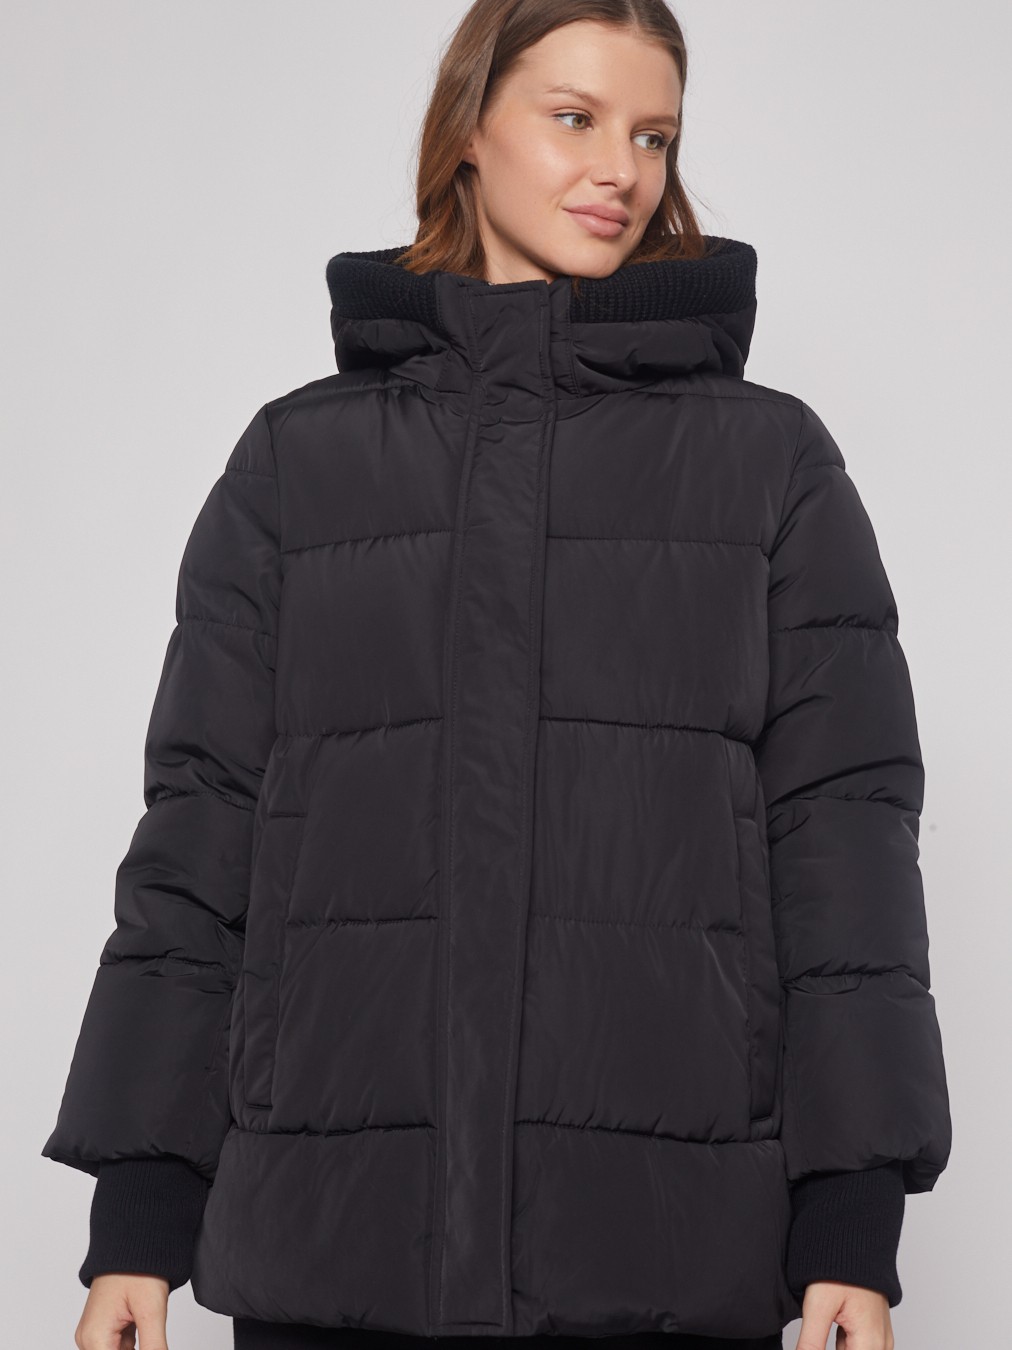 Тёплая куртка с удлинёнными манжетами zolla 022345102284, цвет черный, размер S - фото 4